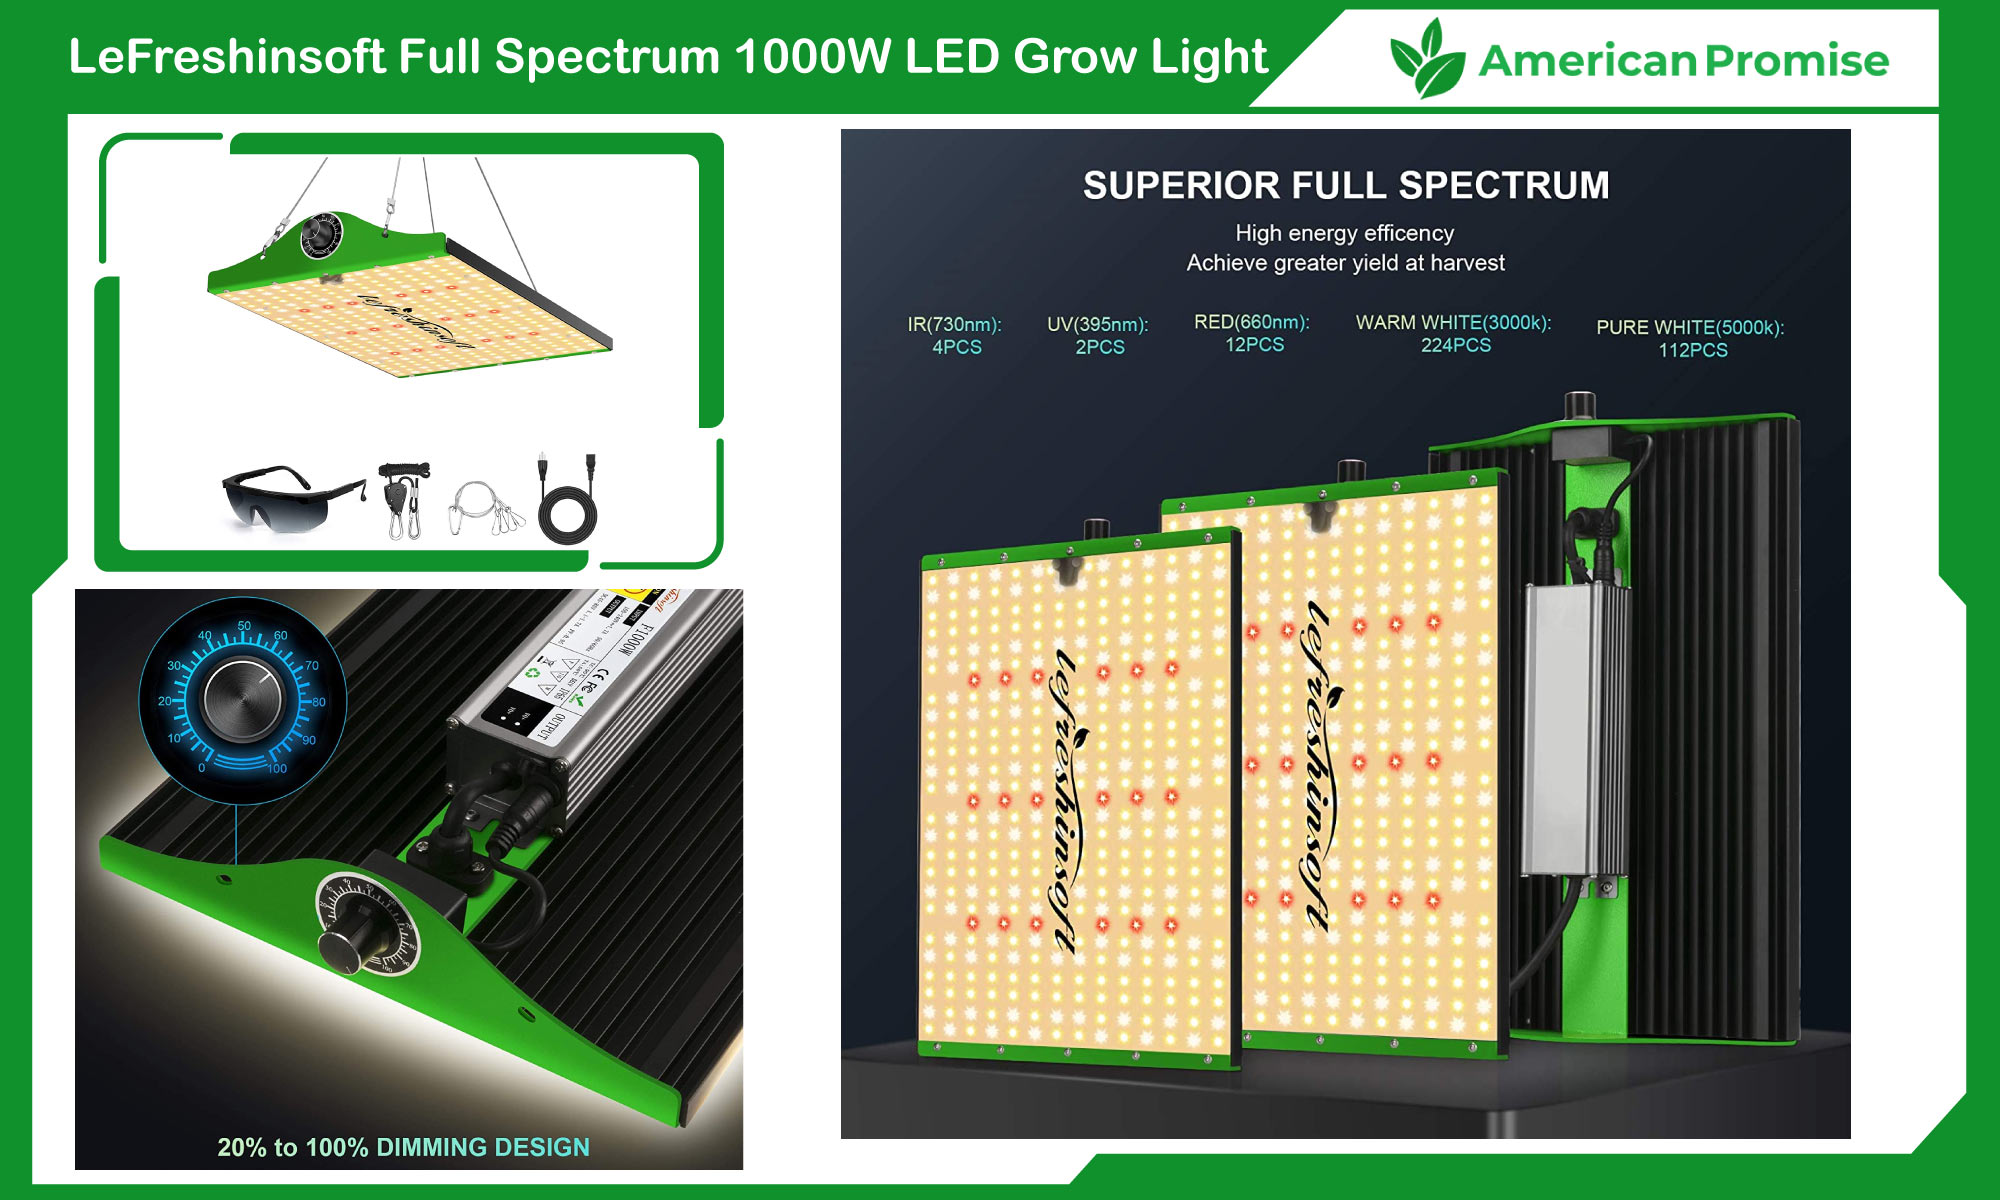 LeFreshinsoft Full Spectrum 1000W LED Grow Light